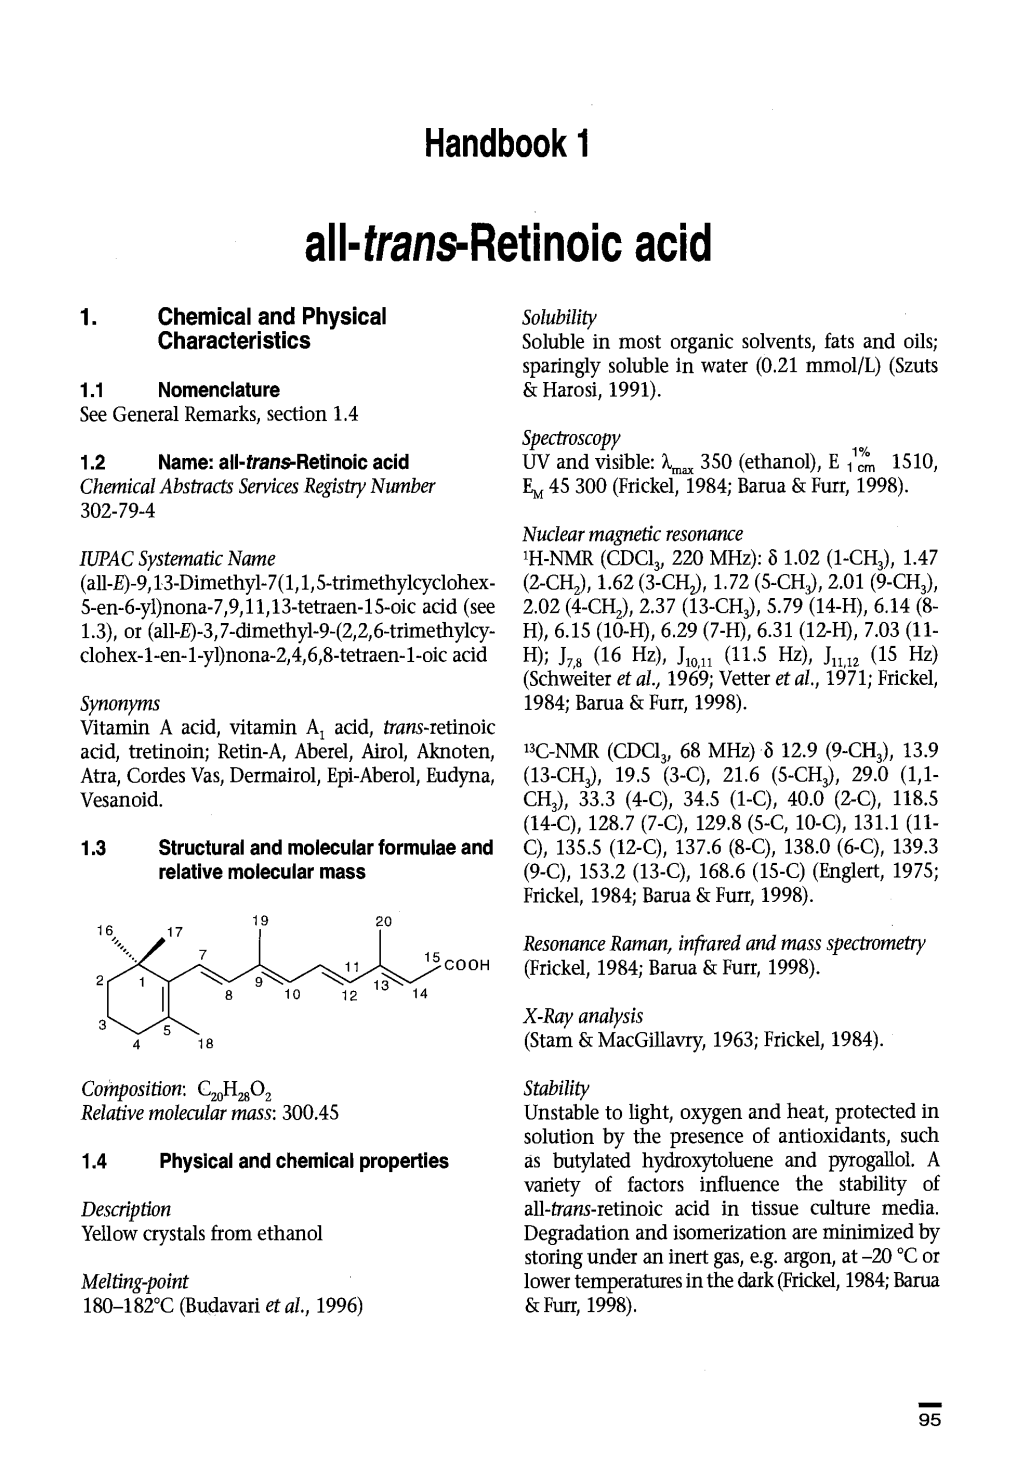 All-Trans-Retinoic Acid